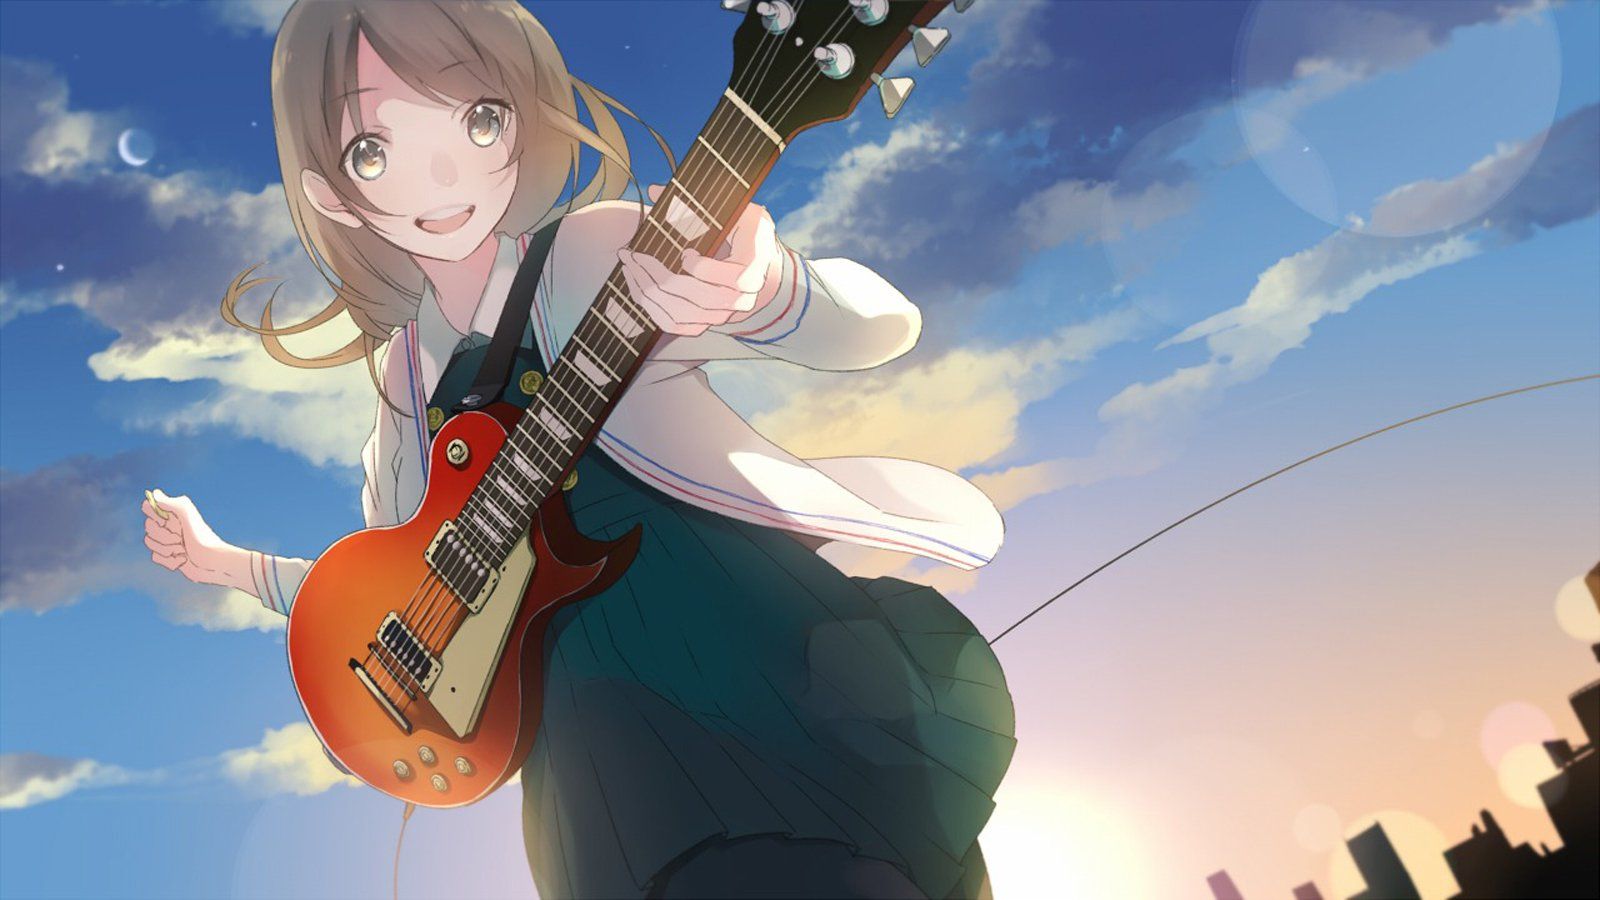 Guitar anime girl cute cloud sky moon star city blue sun light